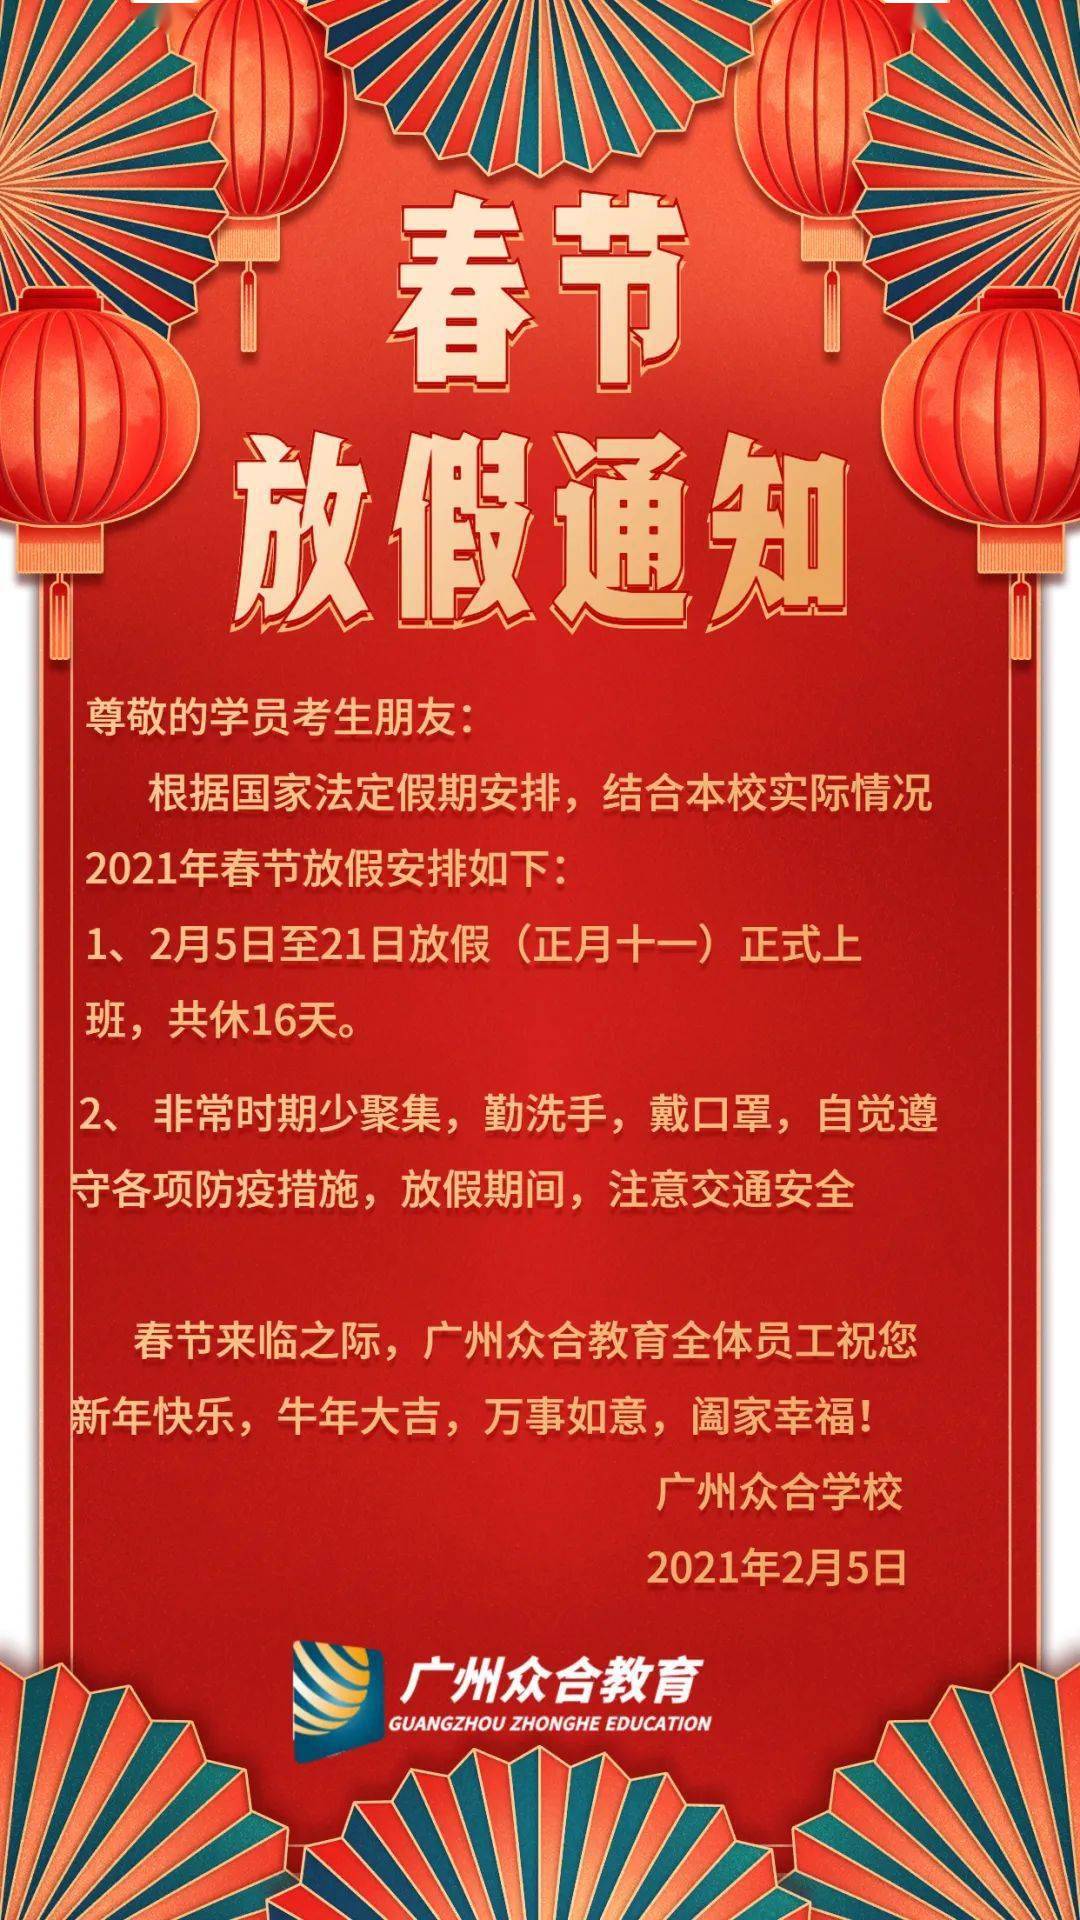 2021年广州众合学校春节放假通知